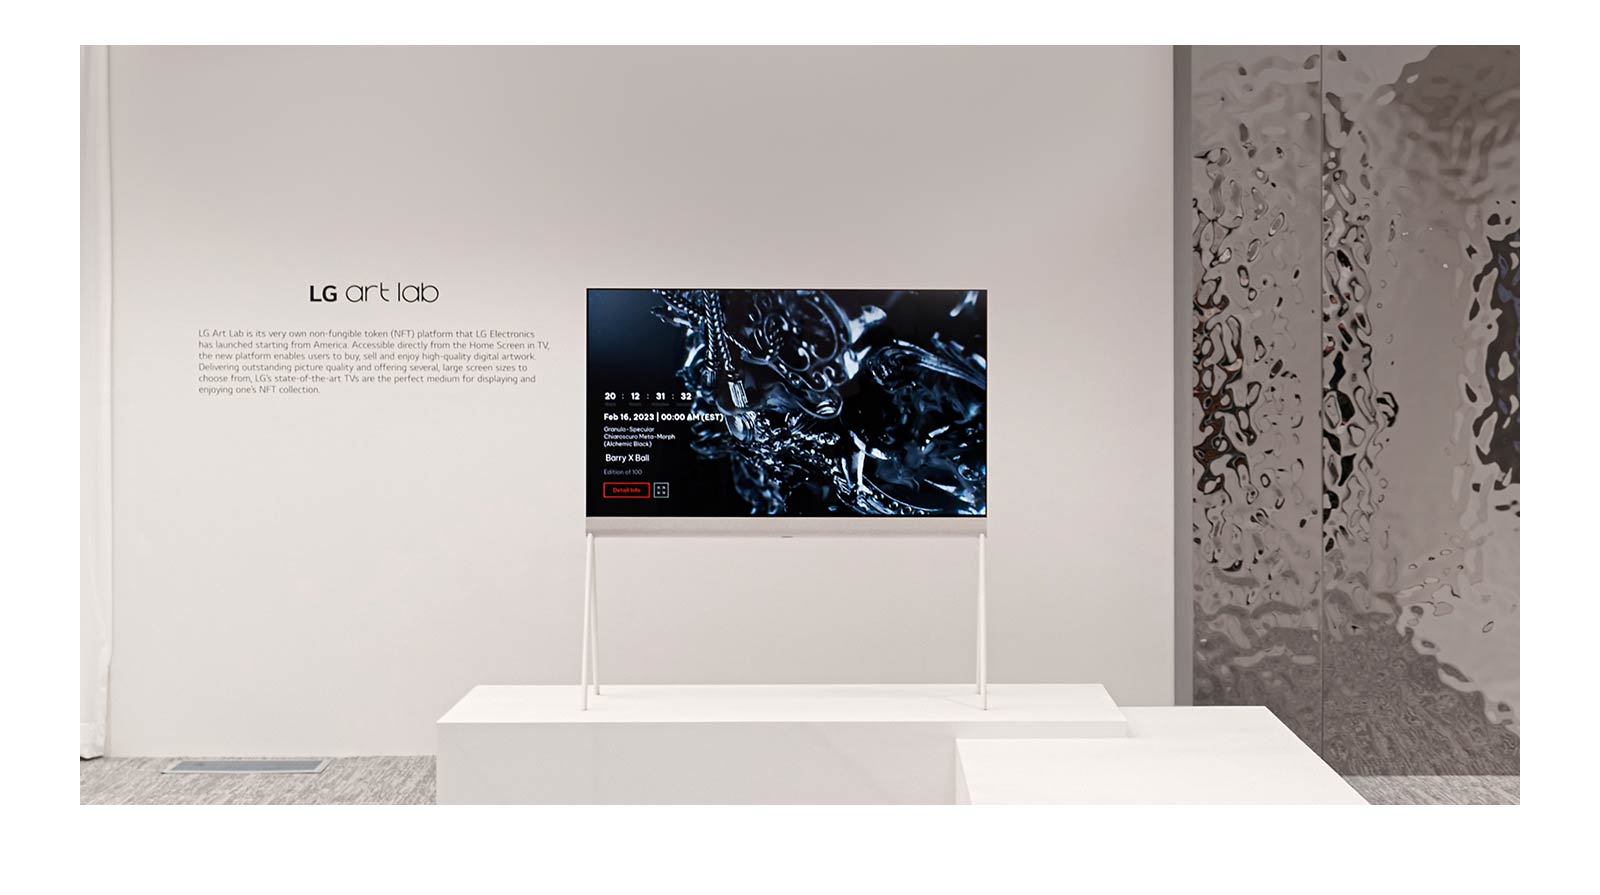 Der Easel in einem weißen Raum zeigt ein digitales Kunstwerk einer schwarzen Skulptur. Rechts neben dem Fernseher befindet sich eine silberne physische Skulptur, die das Raumbild widerspiegelt.